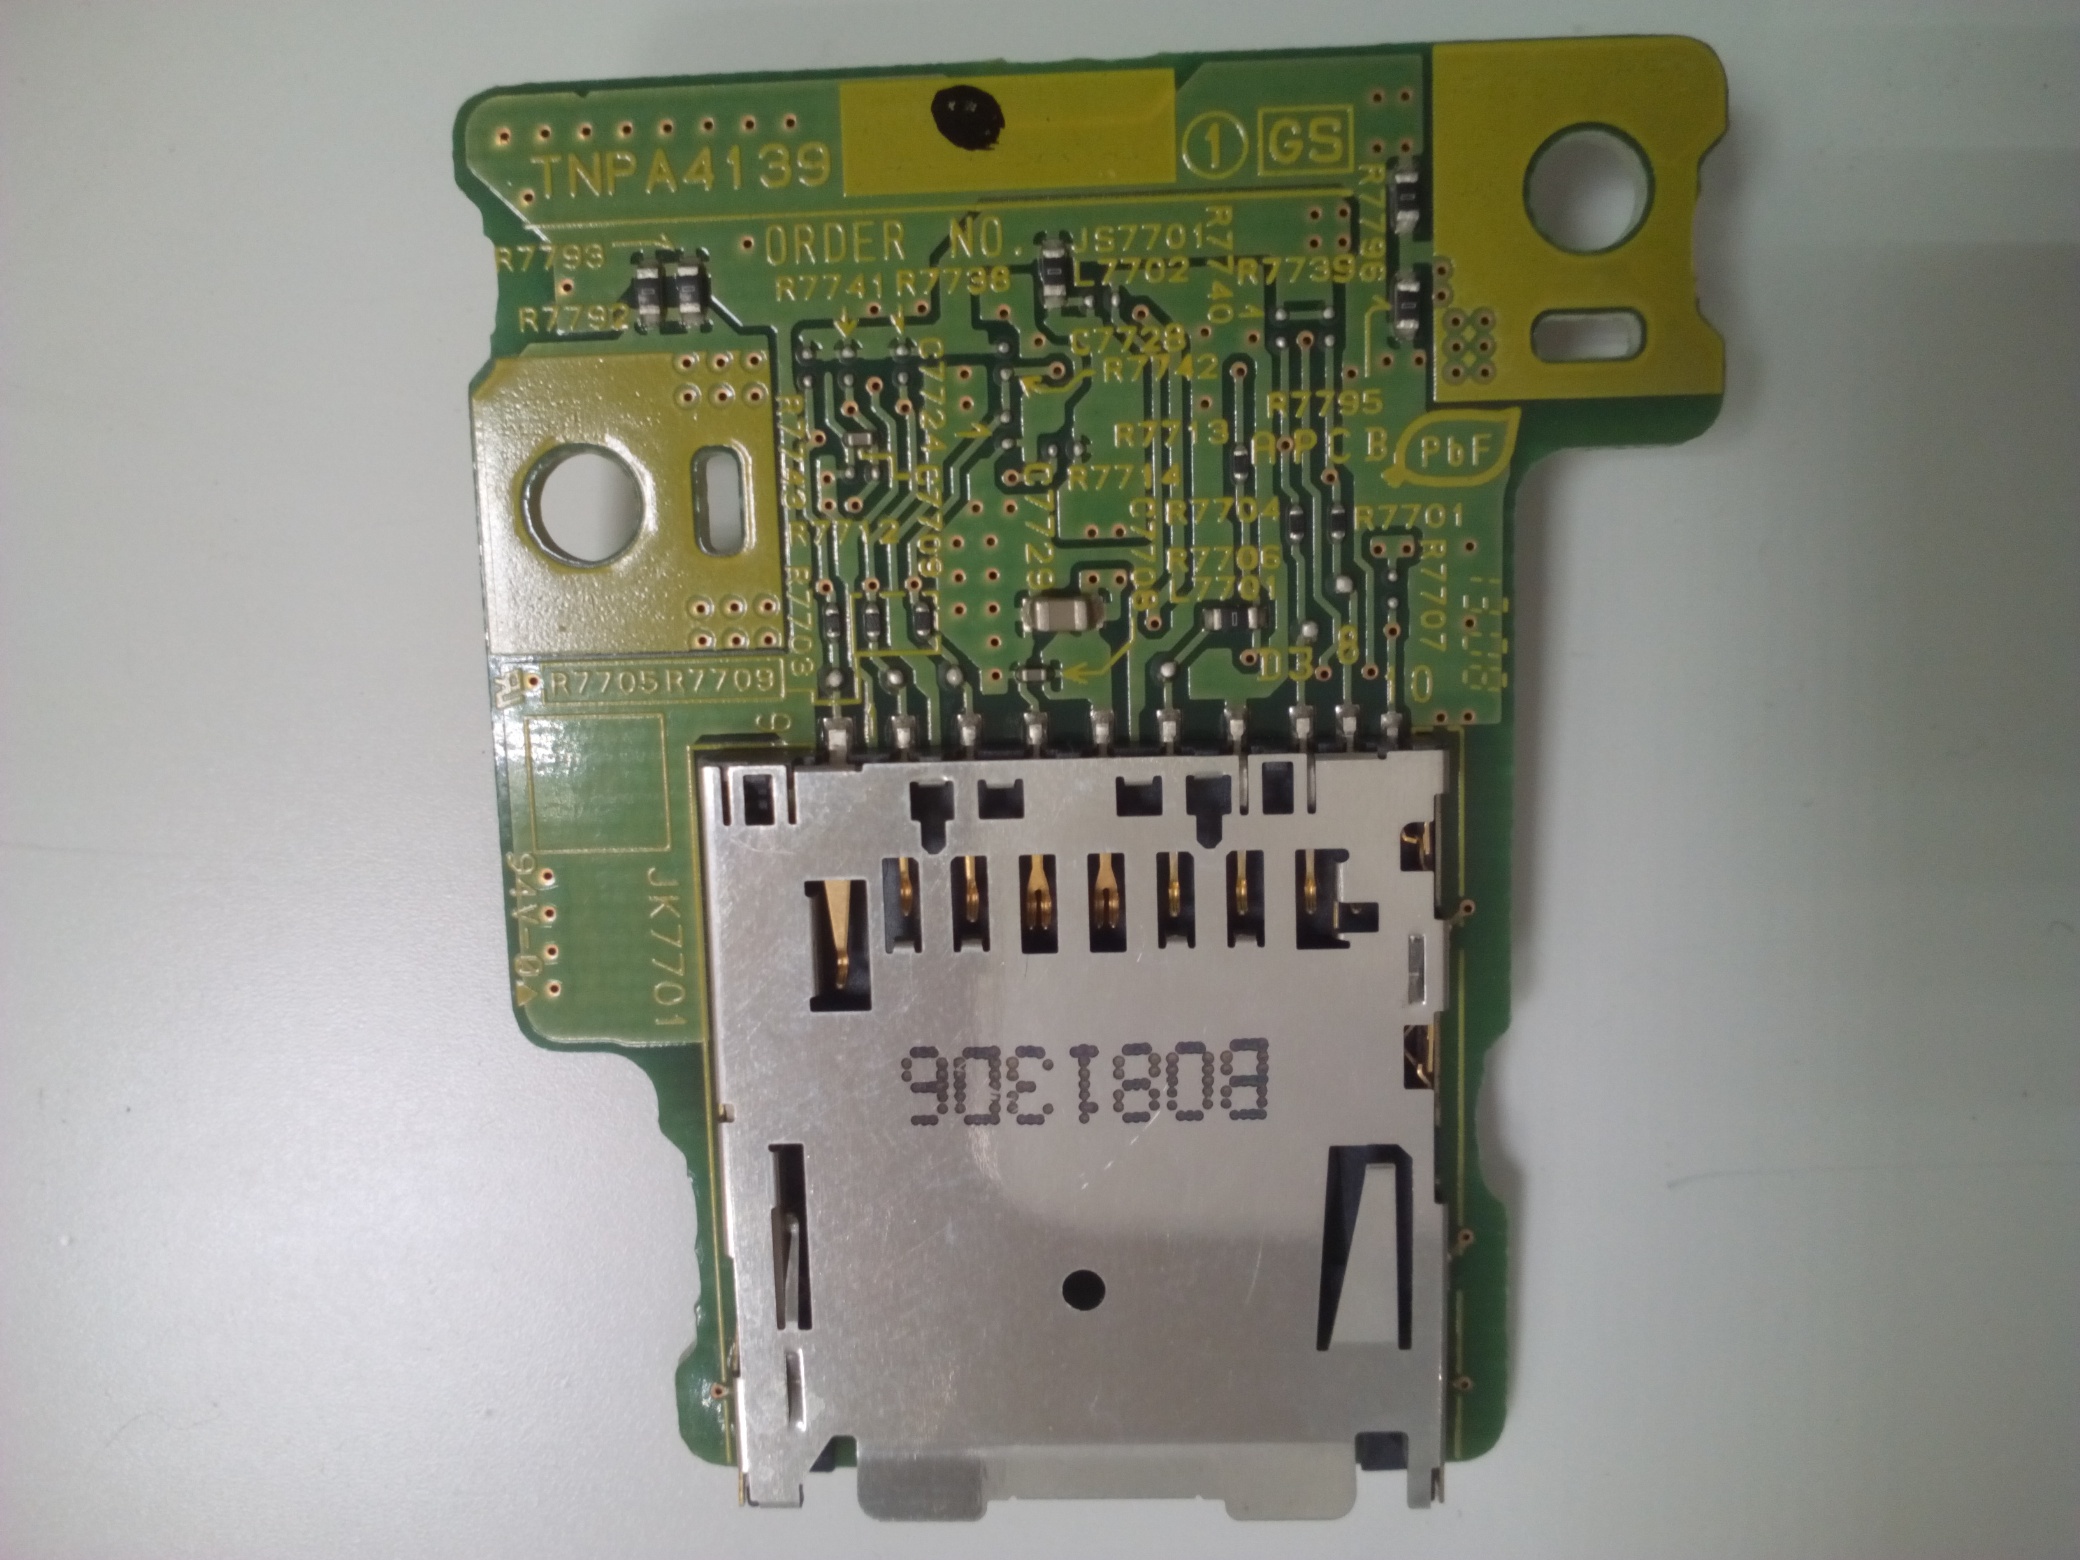 SD Card Reader Board TNPA4139